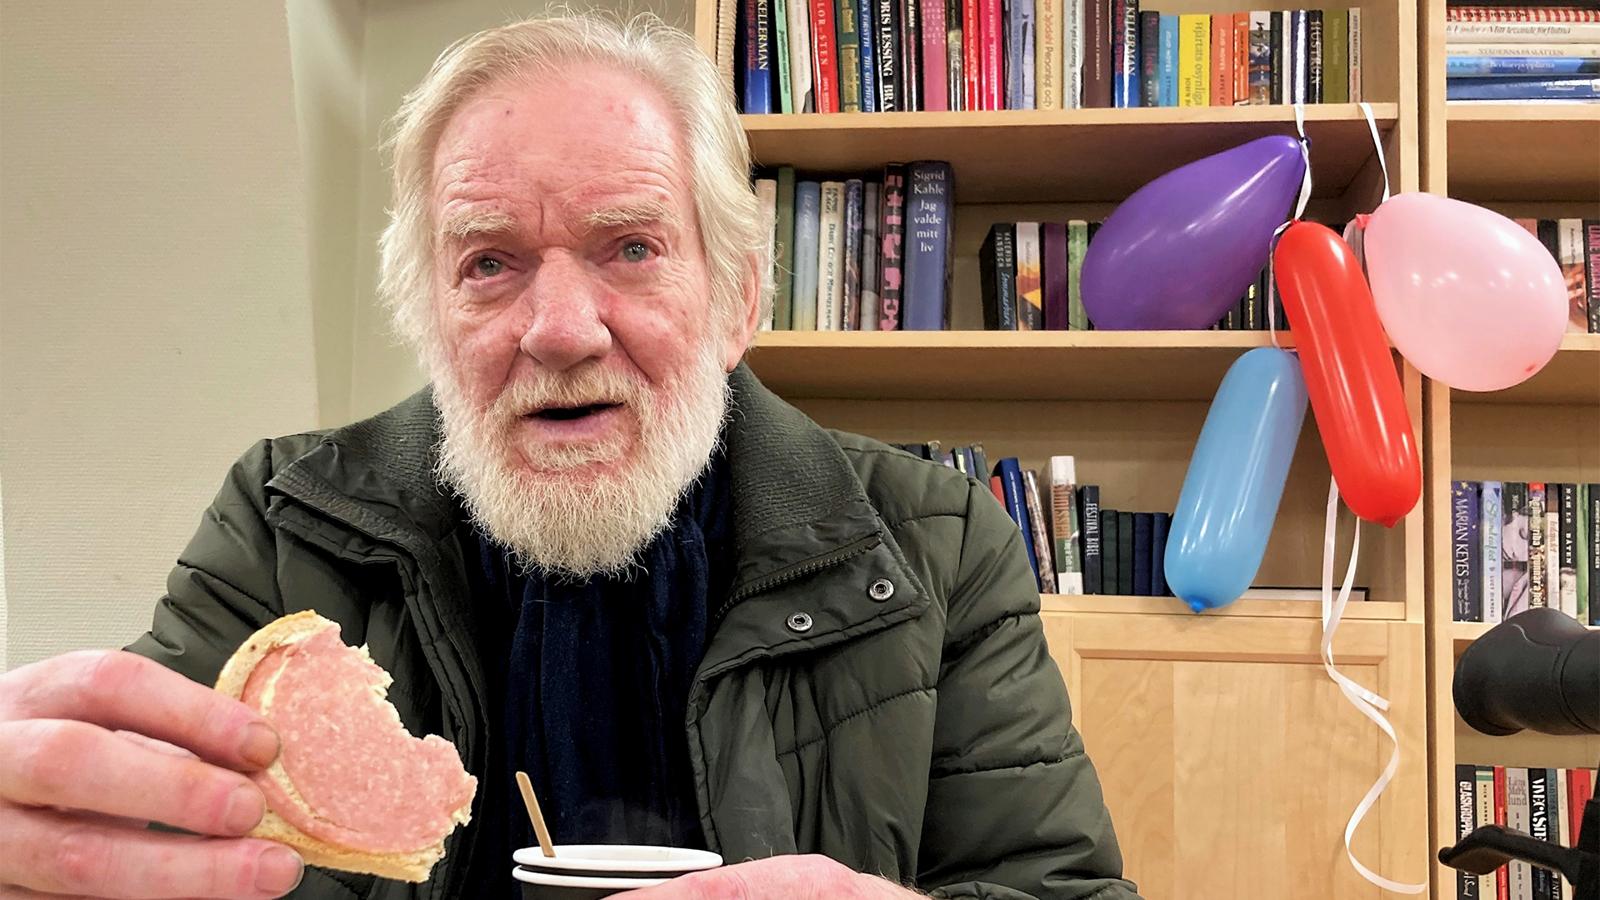 En äldre man med skägg sitter med en smörgås och en mugg i händerna - i bakgrunden syns en bokhylla och en knippe uppblåsta ballonger.